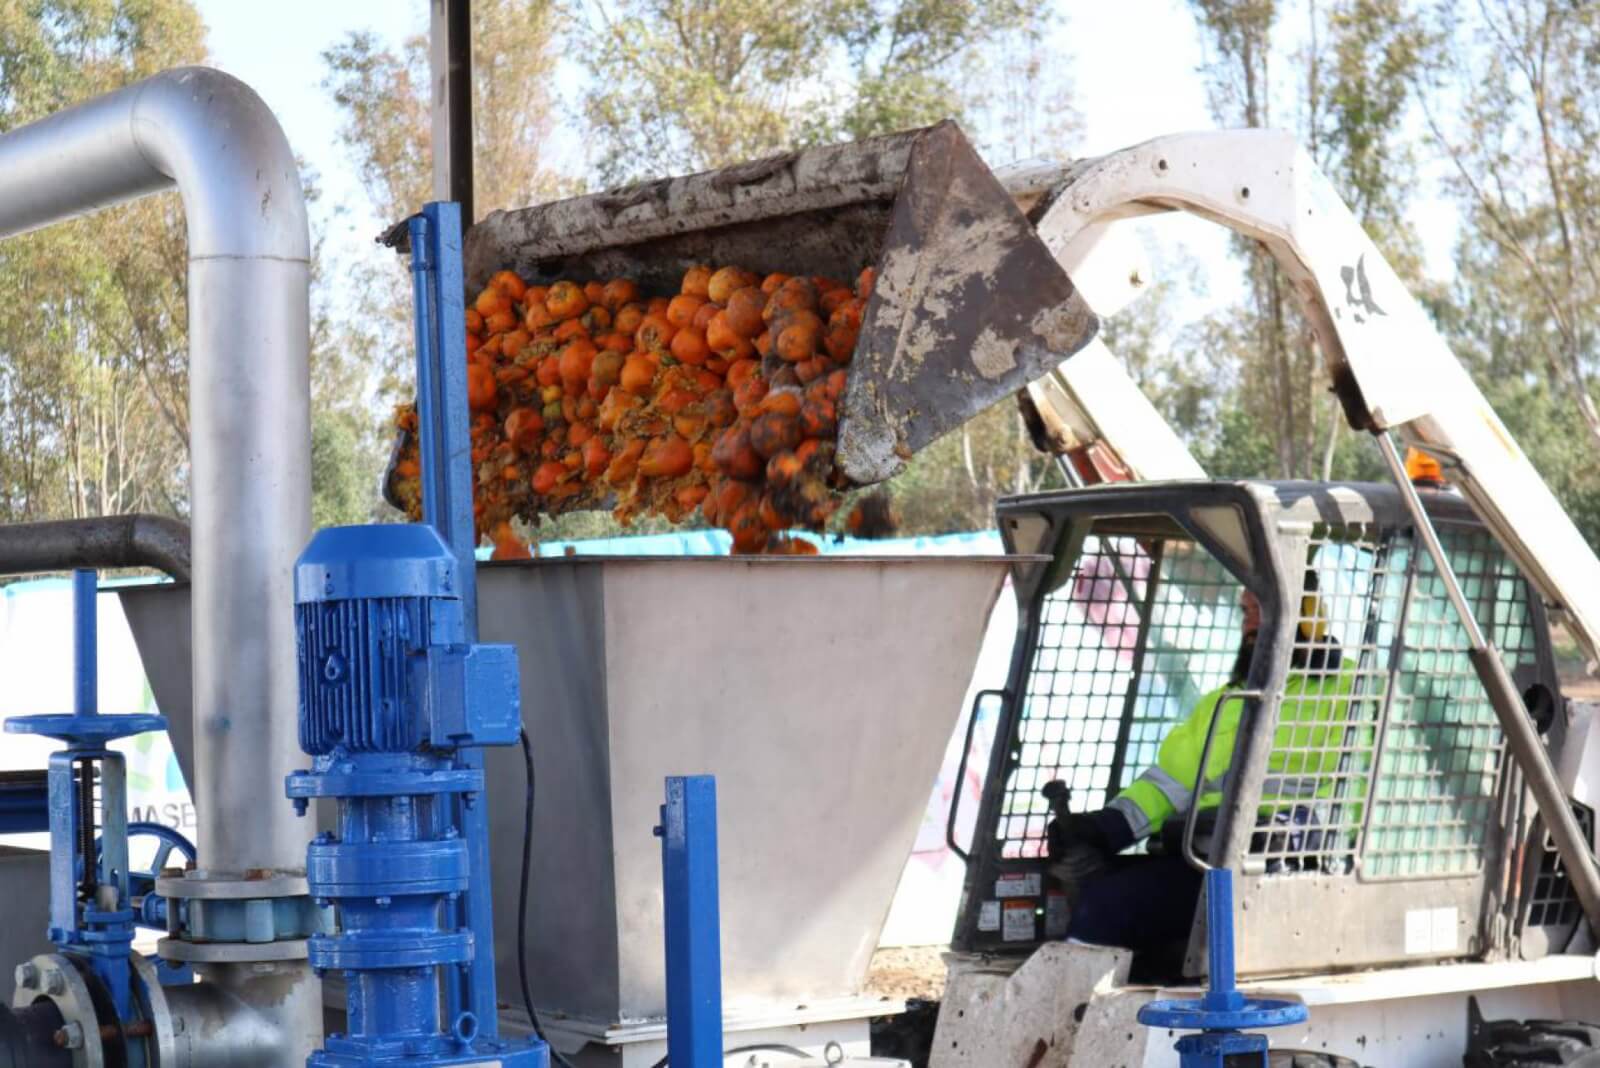 Foto naranjas siendo procesadas. Ayuntamiento de sevilla, España